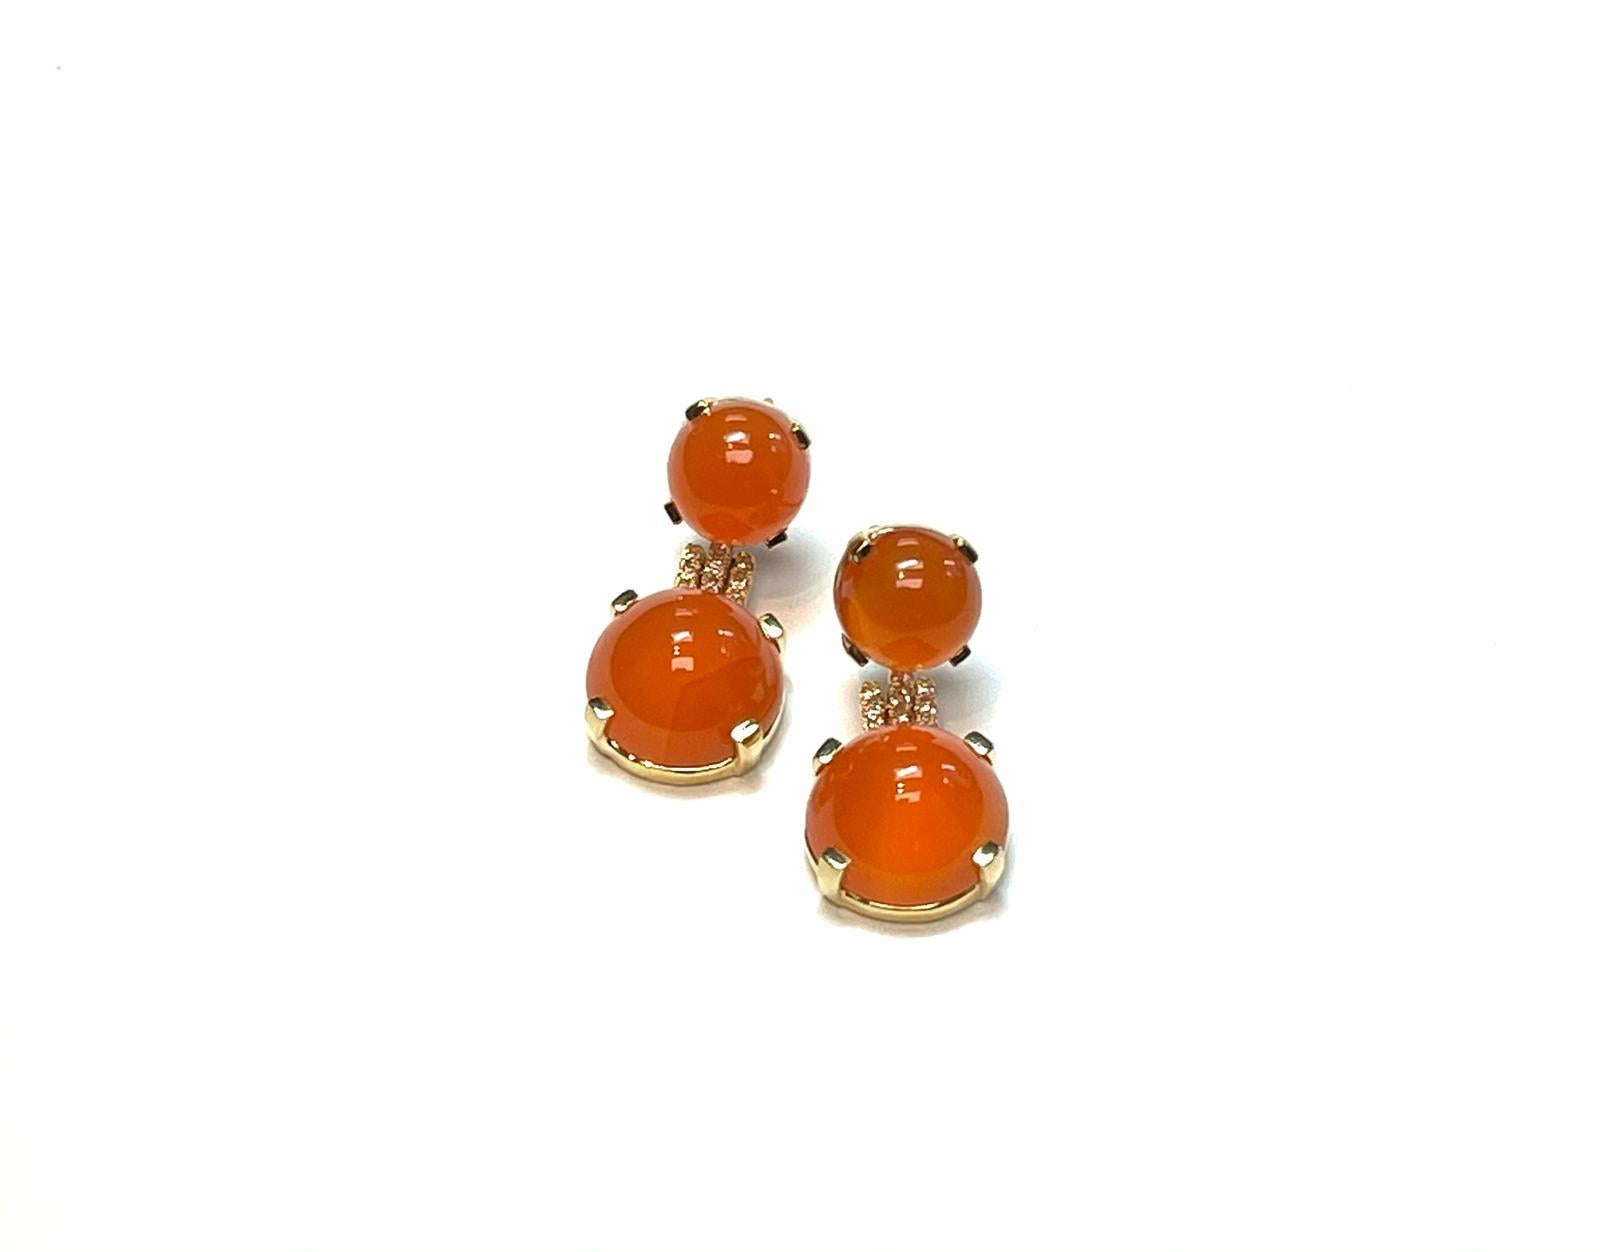 Treten Sie ins Rampenlicht mit unseren orangefarbenen Chalcedon-Cabochon-Ohrringen aus der 'Rock 'N Roll' Collection. Die aus luxuriösem 18-karätigem Gelbgold gefertigten und mit schillernden Diamanten besetzten Ohrringe sind eine perfekte Mischung